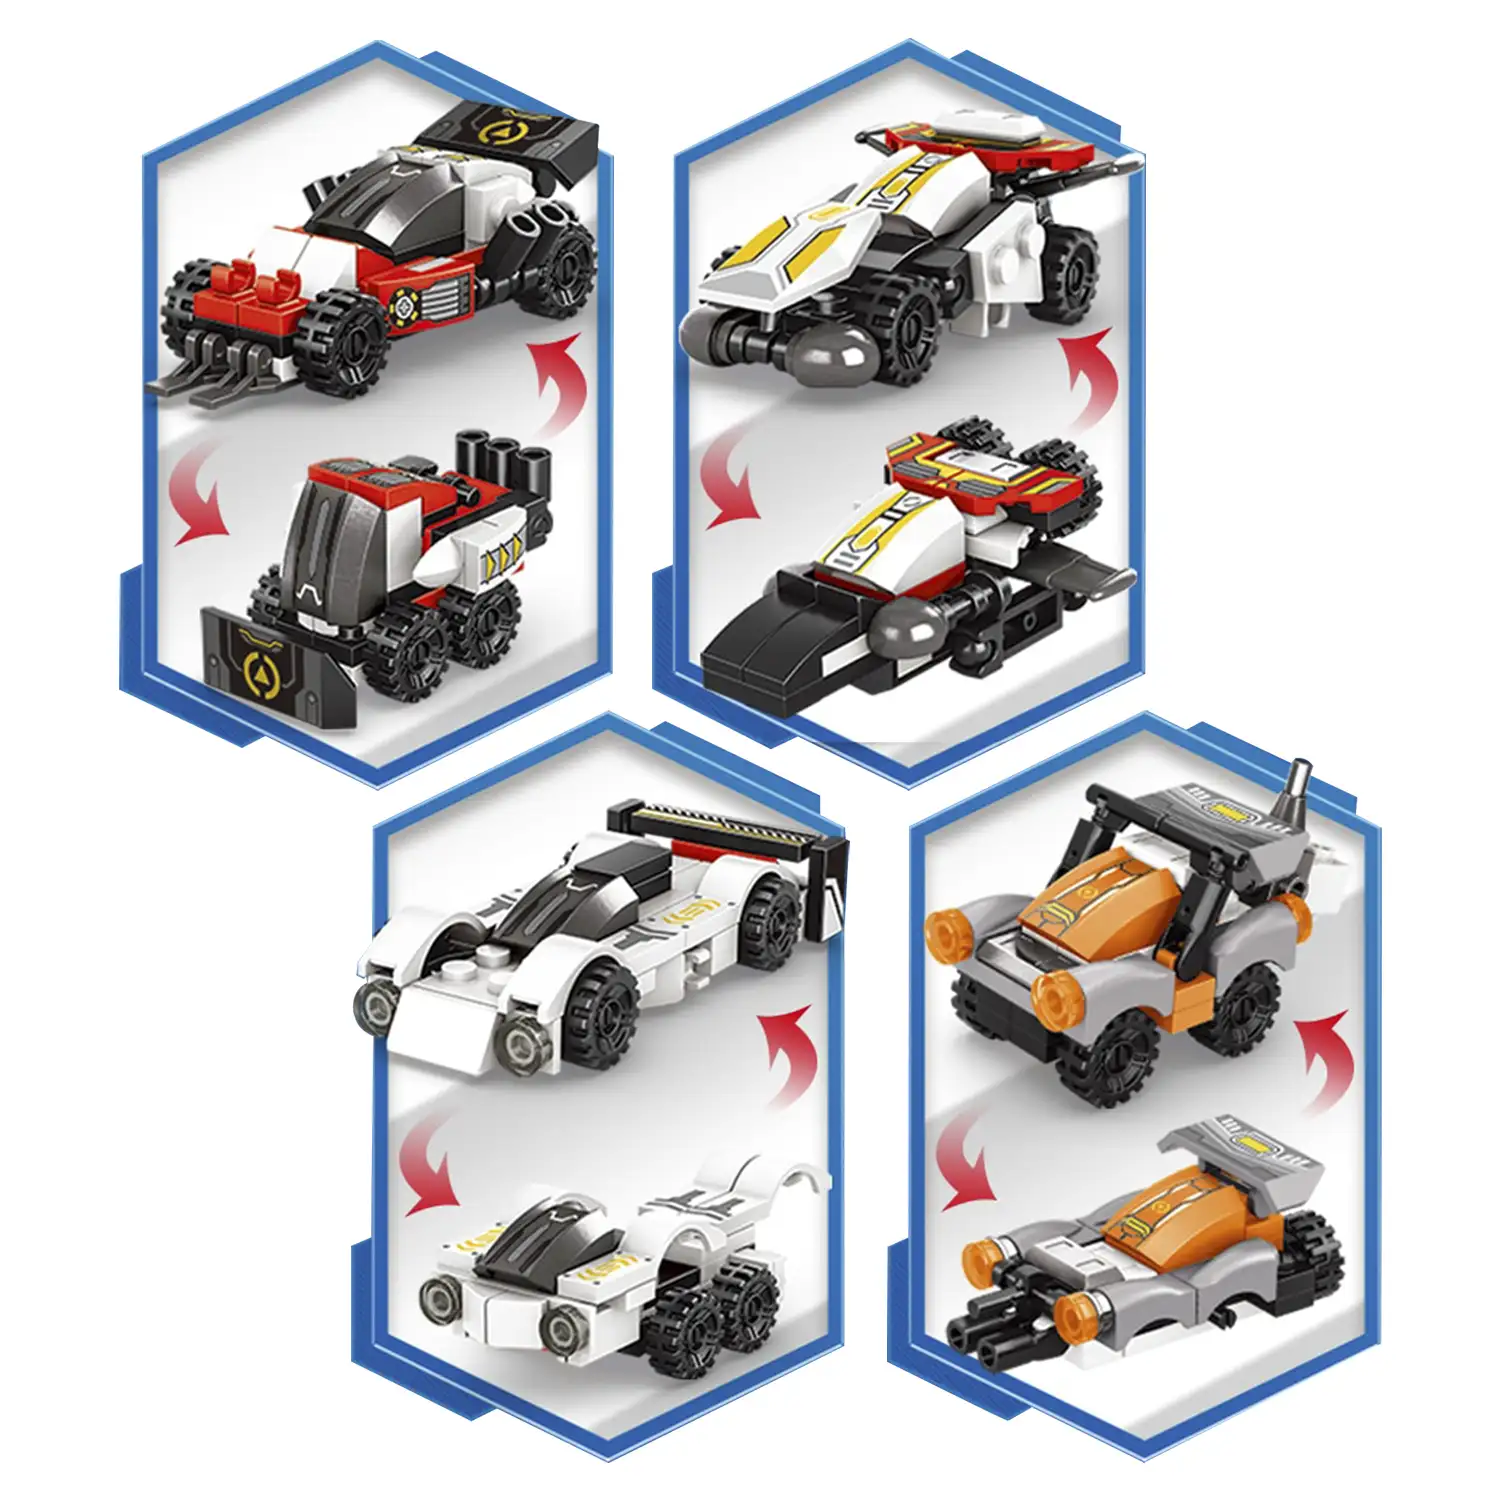 Robot 8 en 1 y tractor 2 formas, cada modelo 2 formas 378 piezas